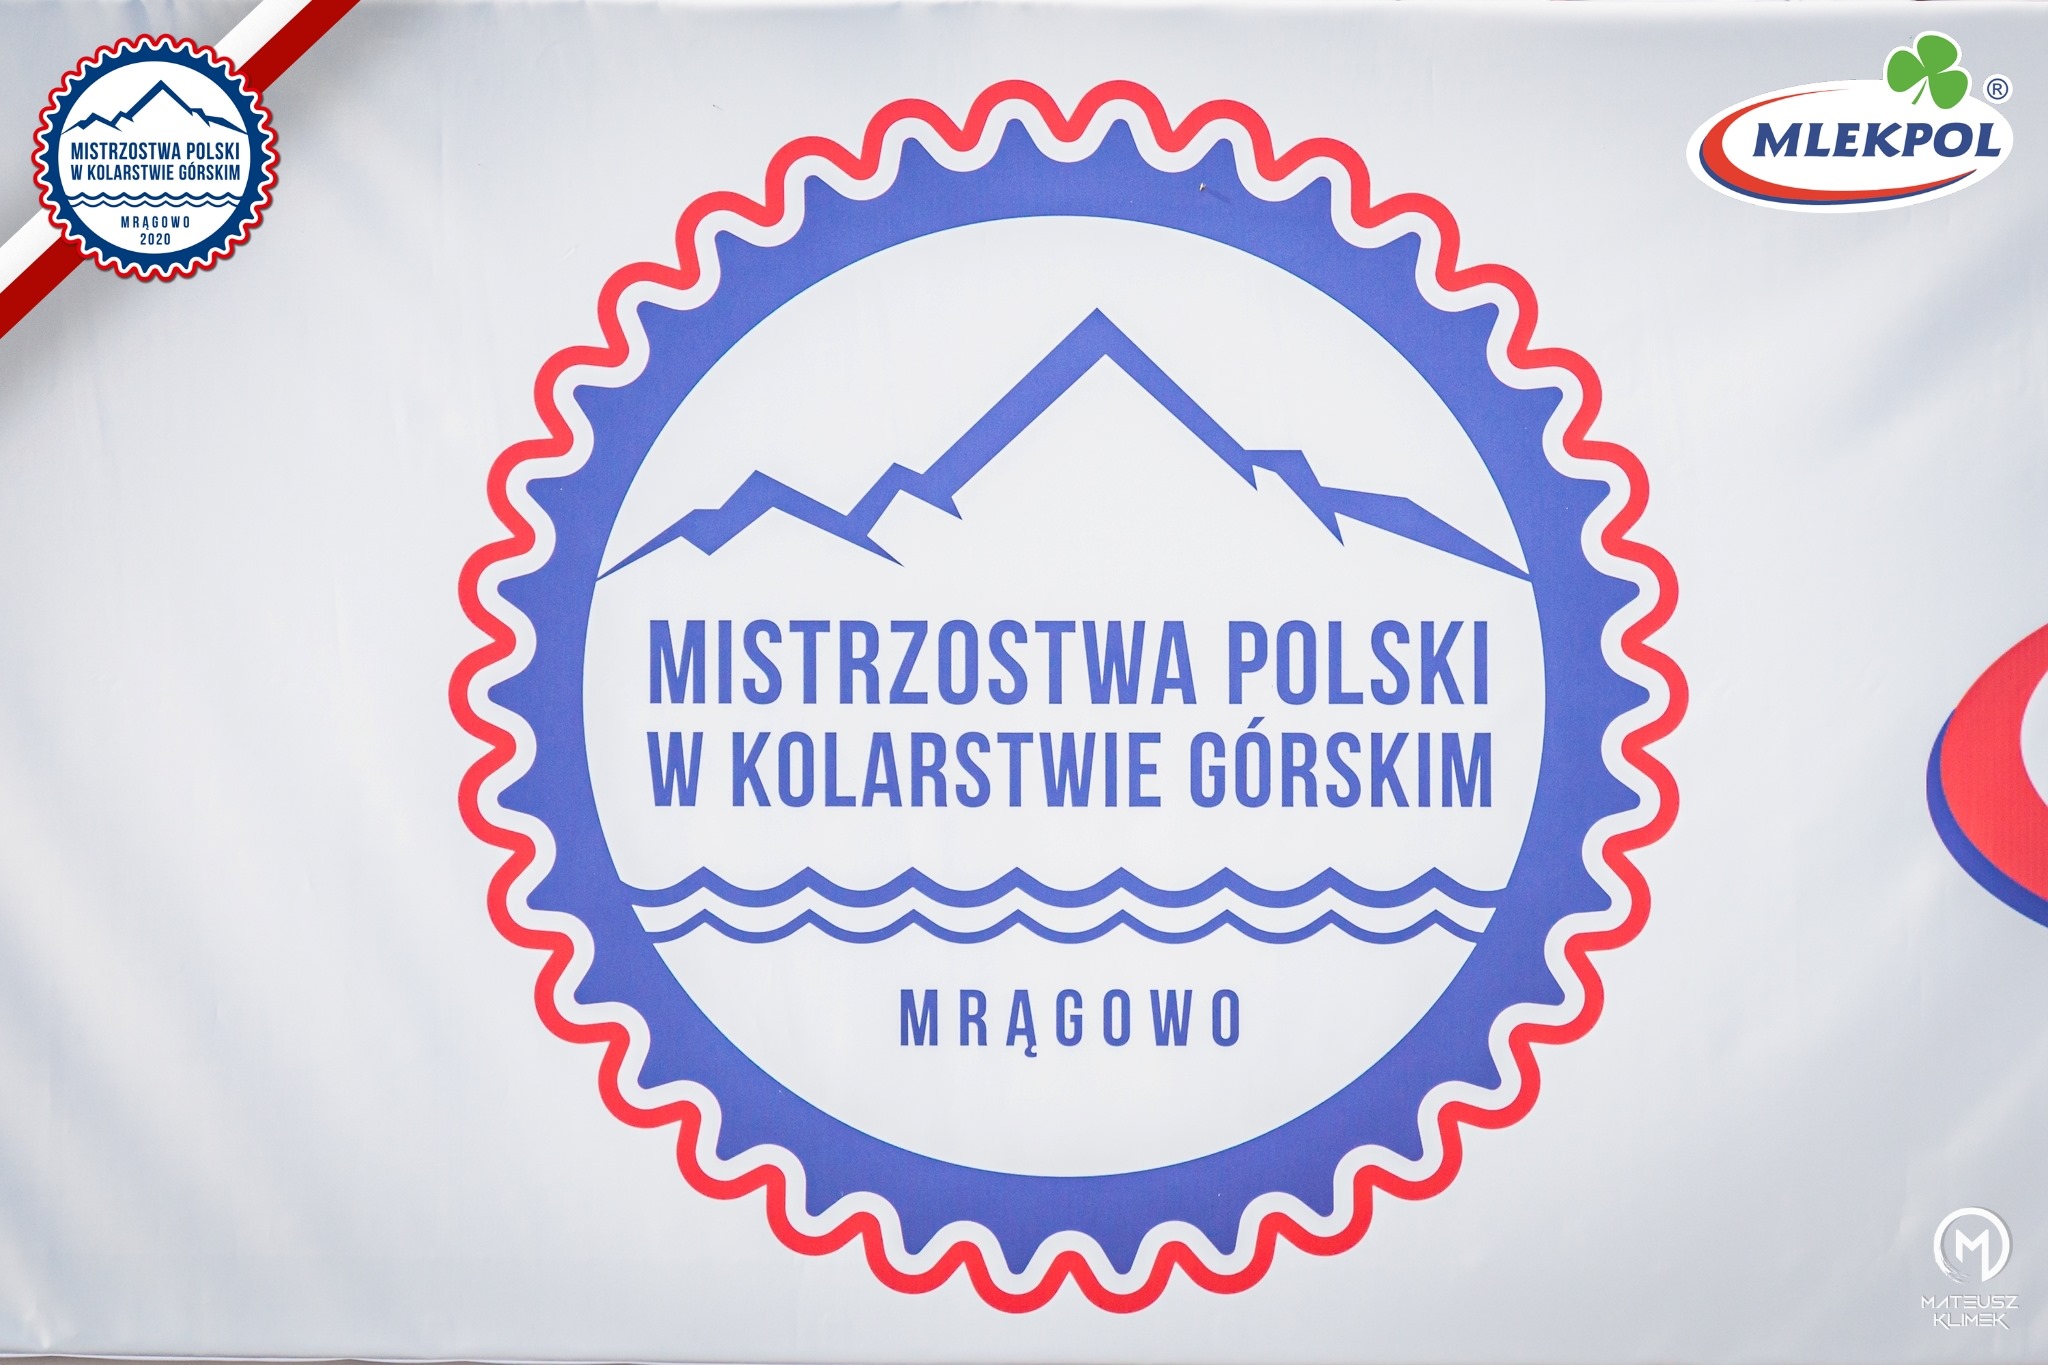 Podsumowanie Mistrzostw Polski w kolarstwie górskim Mrągowo 2020